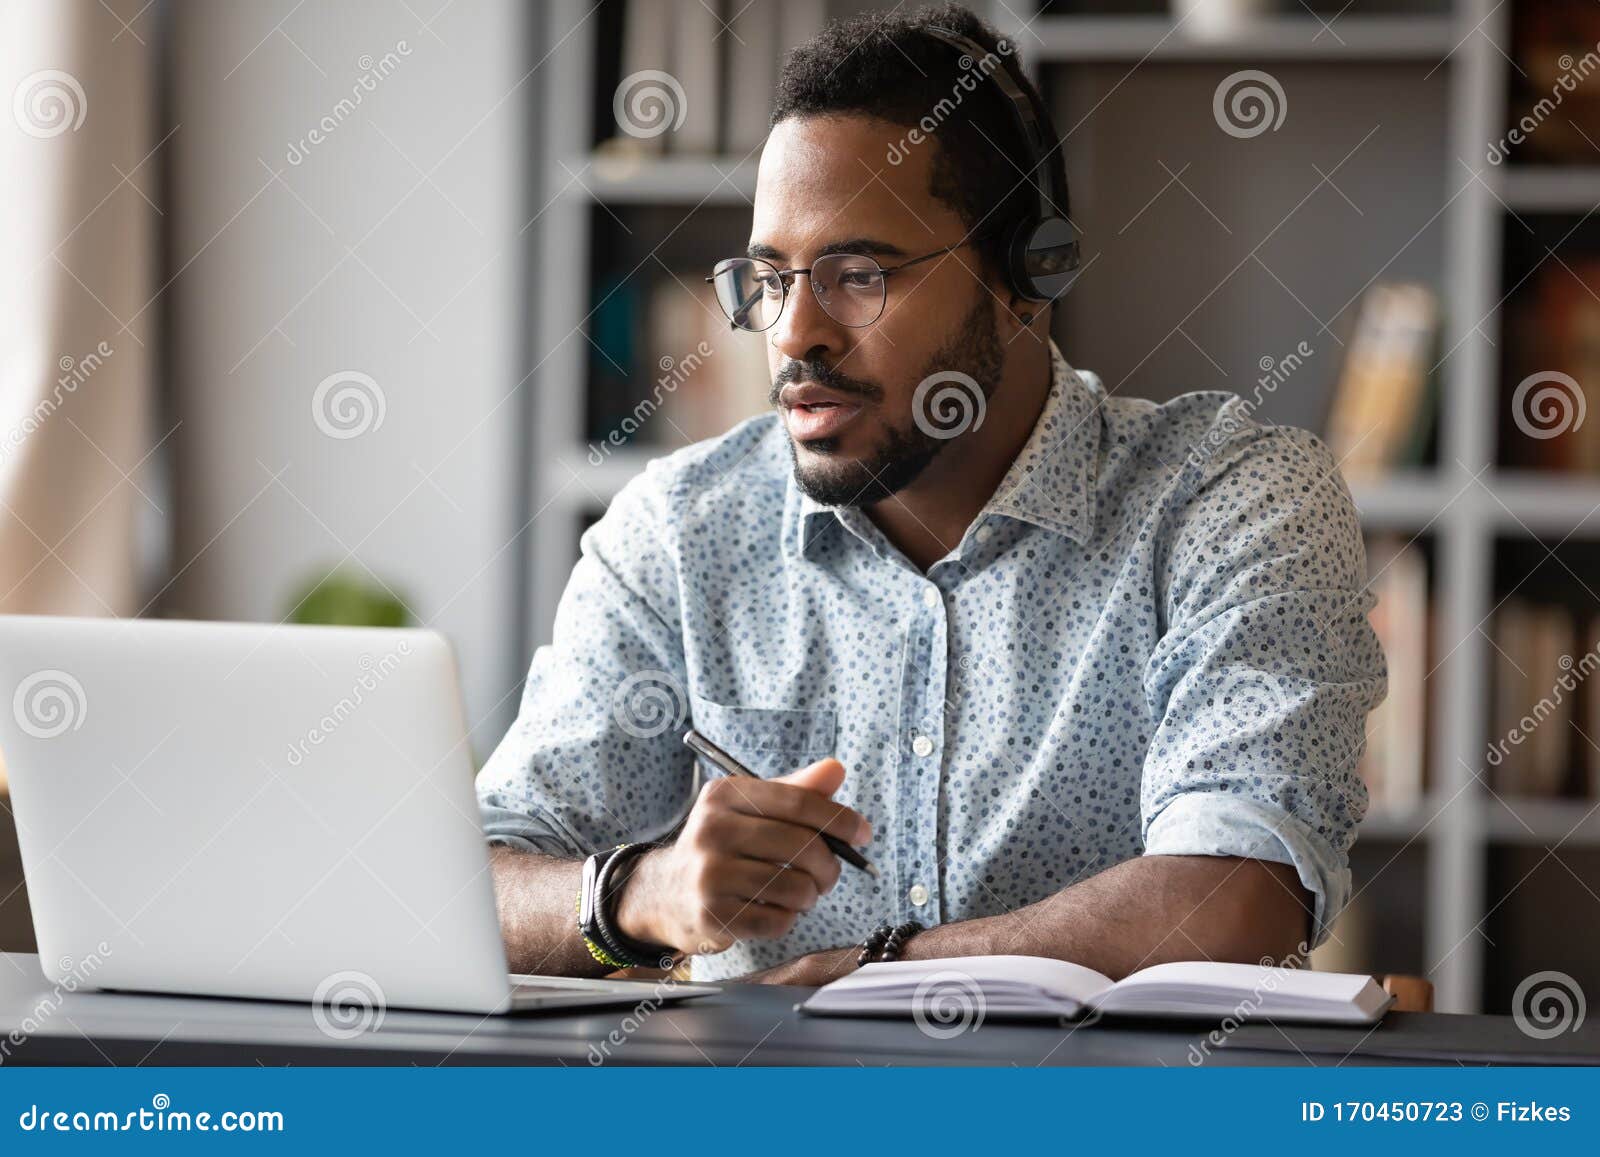 focused african businessman wear headphones study online watching webinar